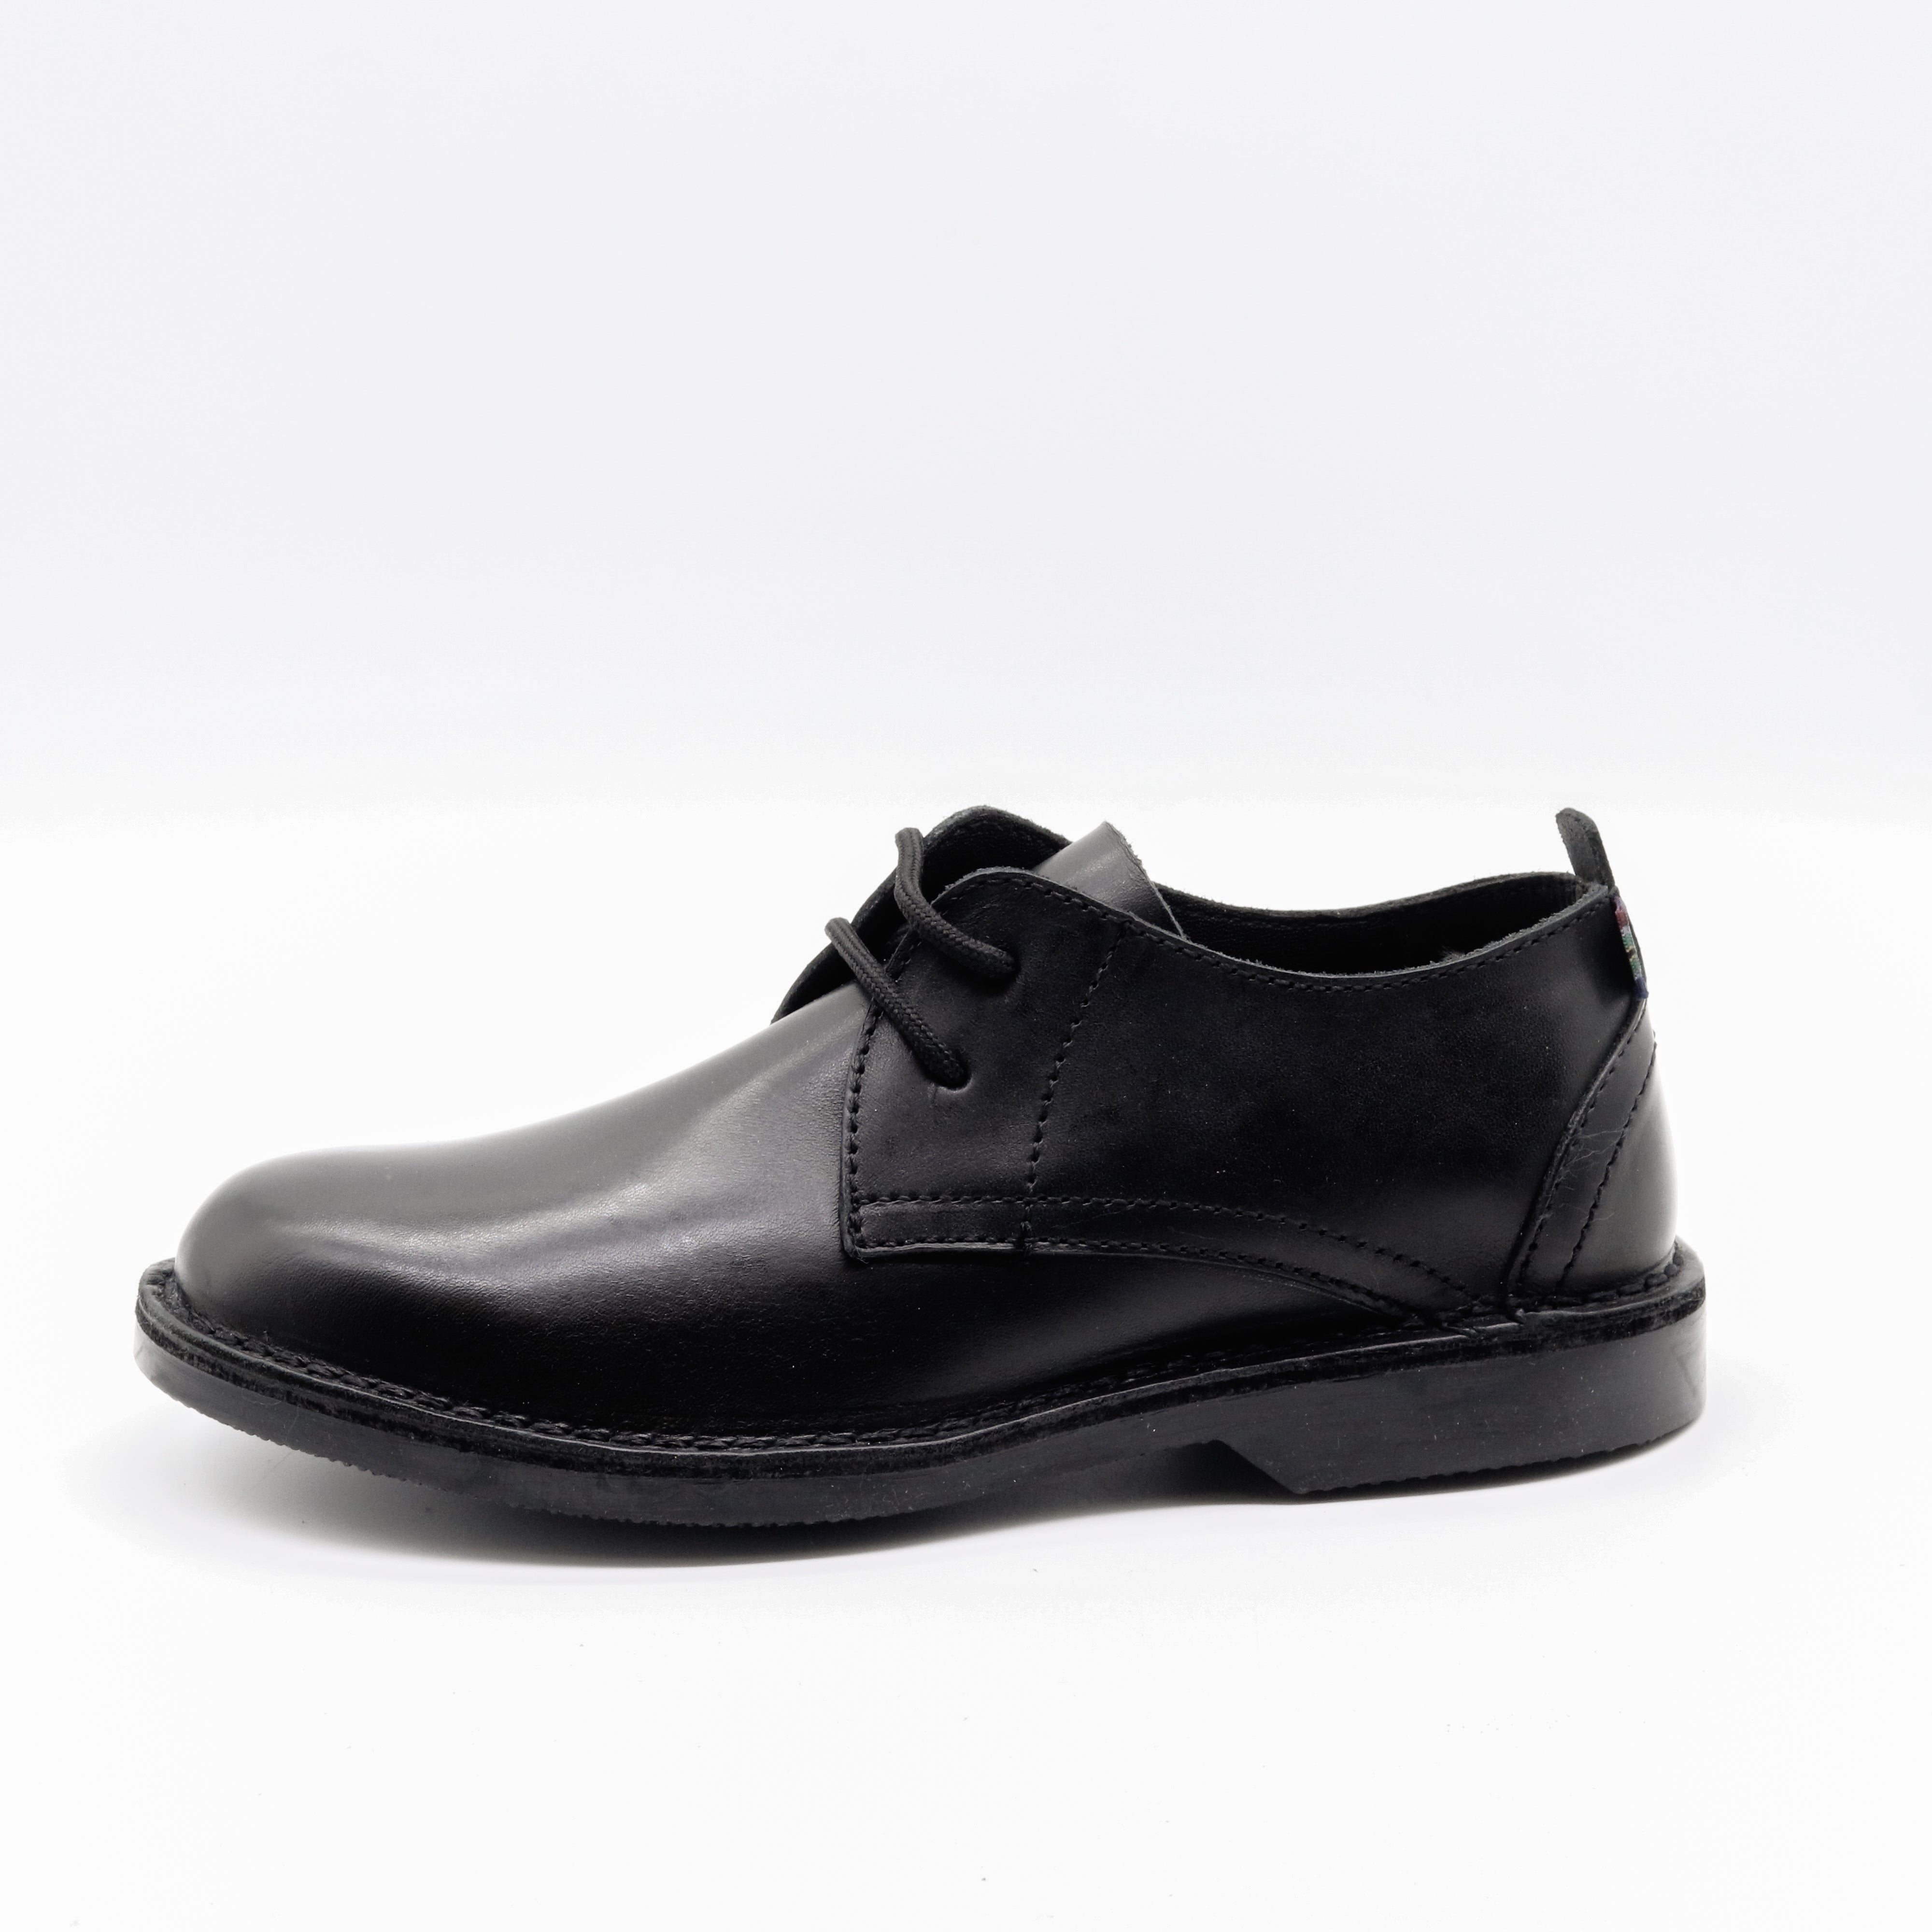 WOMEN'S SMART BLACK SHOE – Veldskoen Shoes Australia